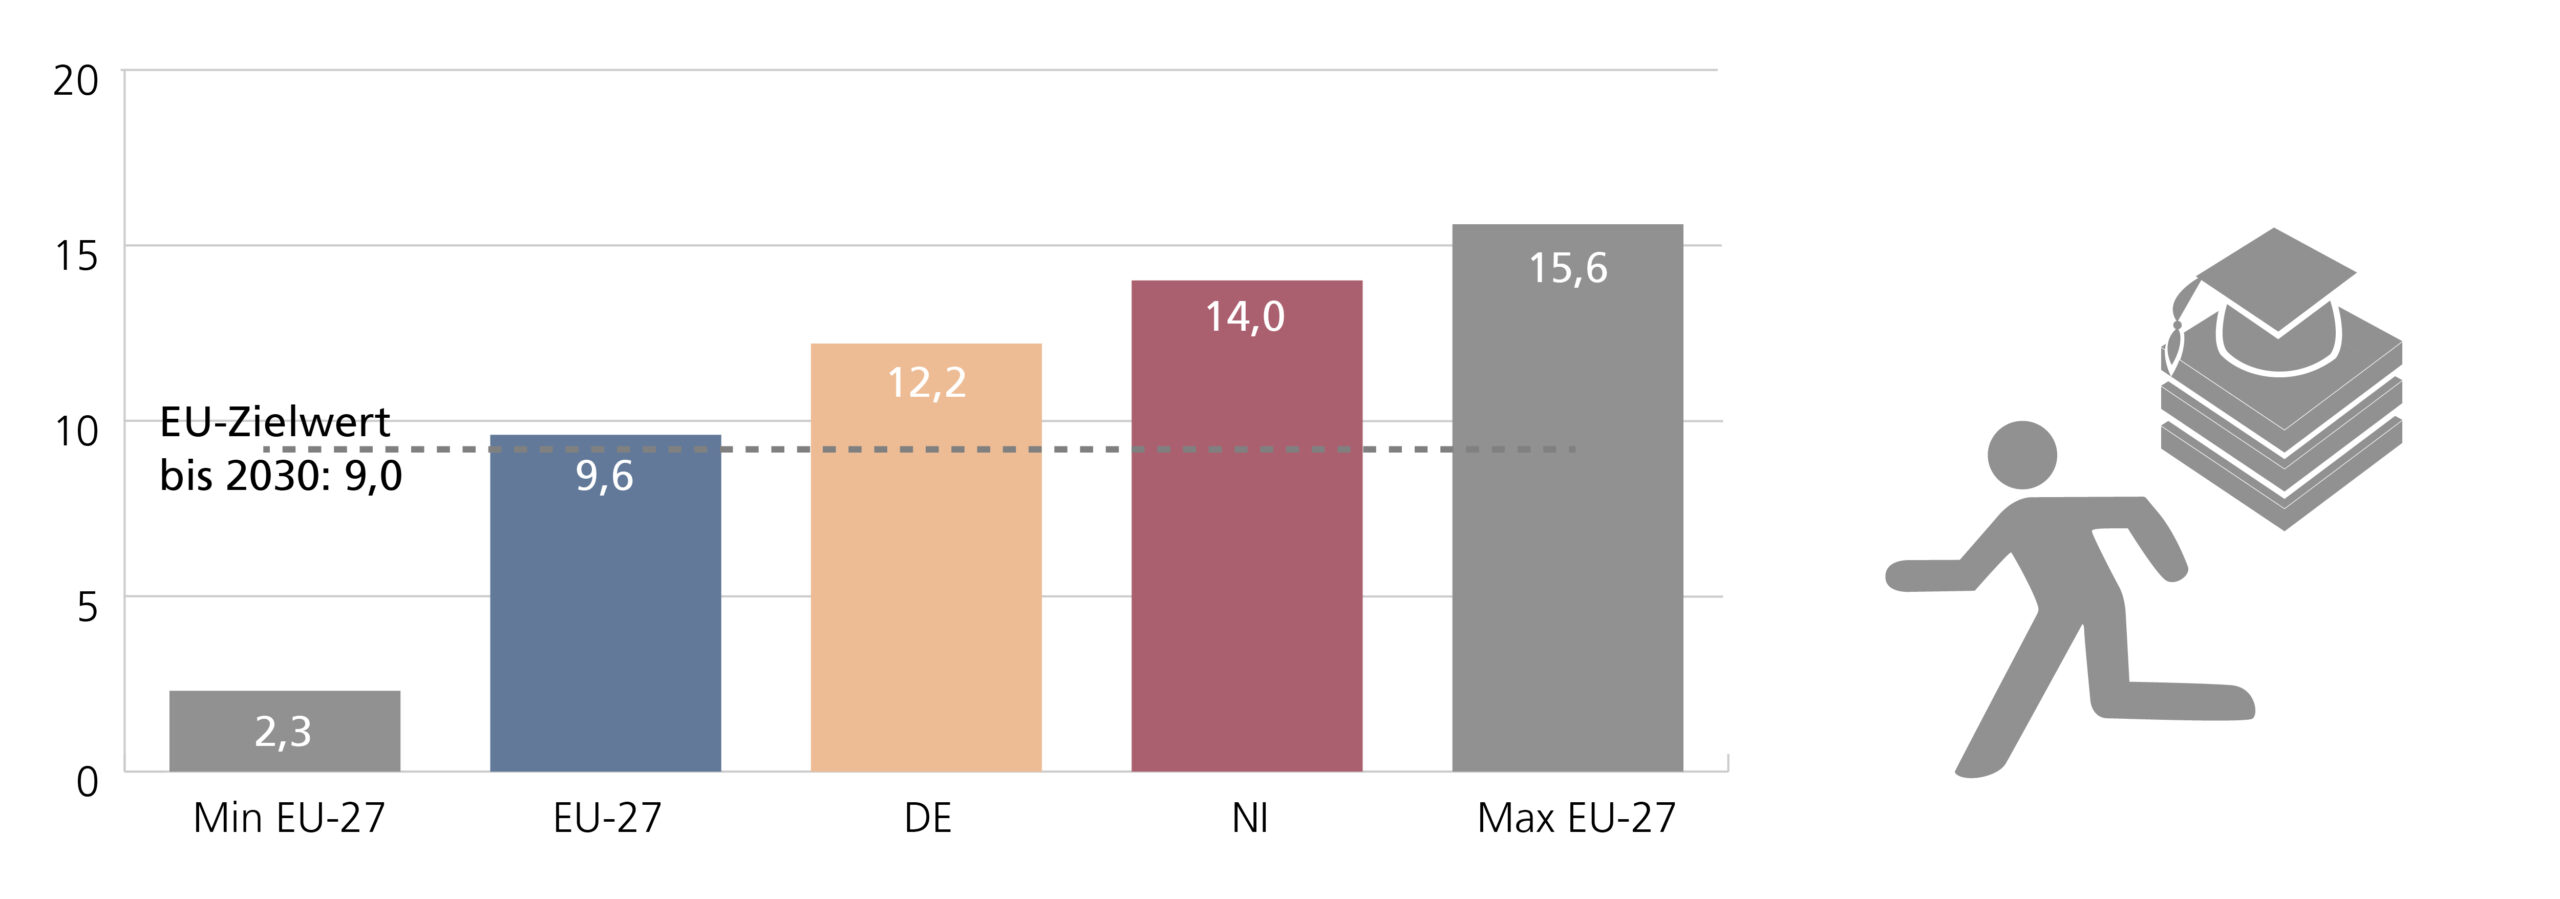 A6: Balken-Diagramm: Anteil der frühen Schulabgängerinnen und Schulabgänger an der gleichaltrigen Bevölkerung 2022 im EU-Vergleich in Prozent – für Niedersachsen, Deutschland und EU sowie Minimum und Maximum (Werte aus Tabelle 3). Ergänzend ist der EU-Zielwert bis 2030 von 9,0% als Linie dargestellt.